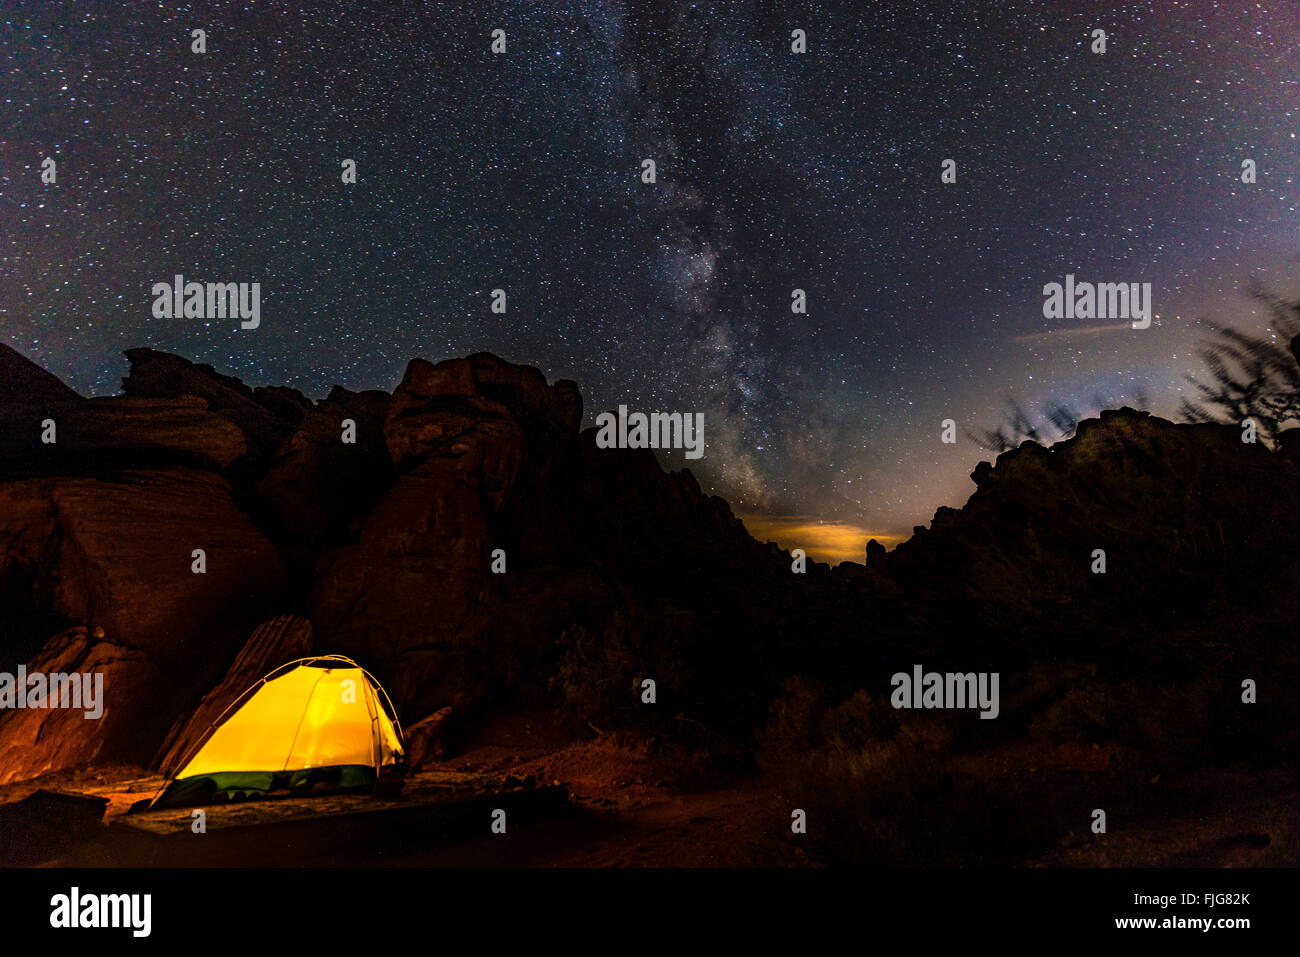 Zelt auf einem Campingplatz mit Sternenhimmel oben und Milky Way, Nachtszene, Wildrose Campingplatz, Death Valley Nationalpark, Kalifornien Stockfoto